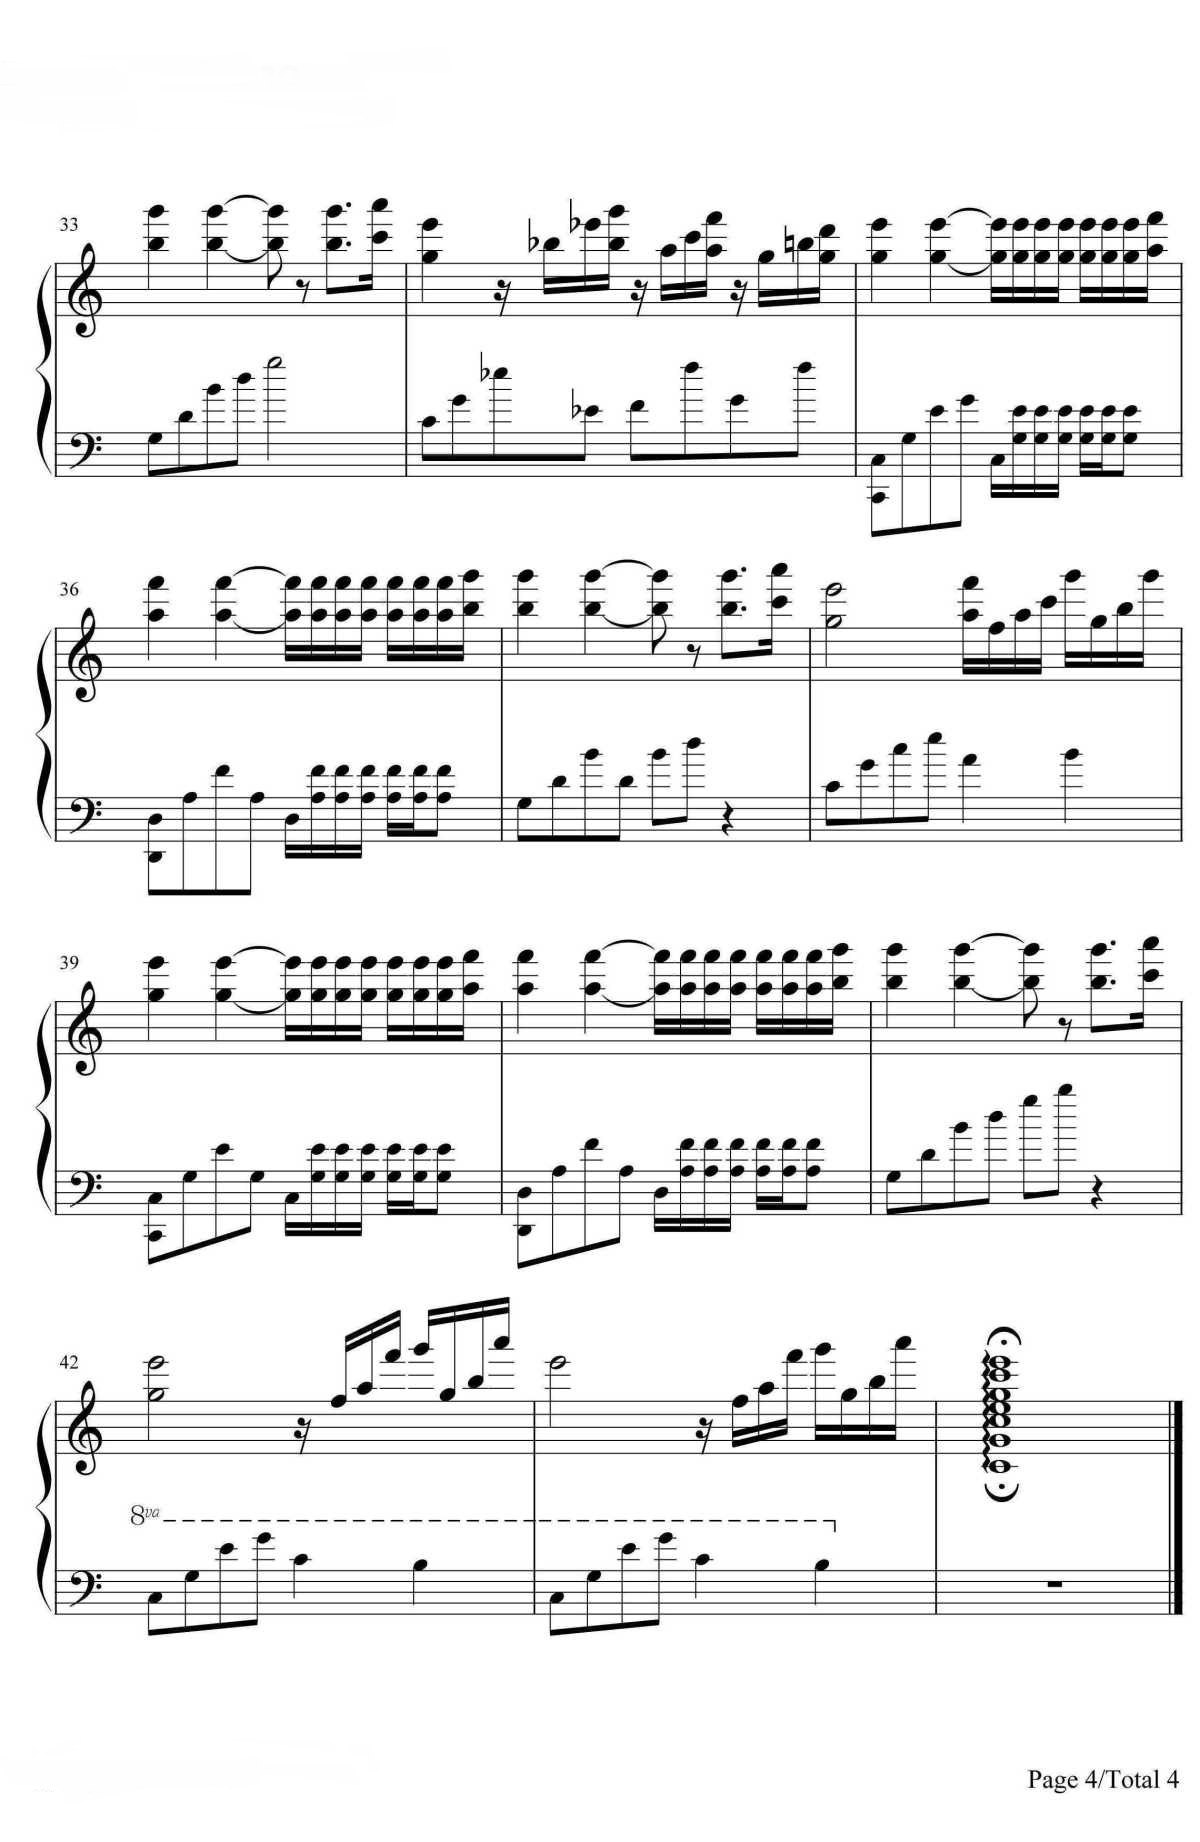 【水边的阿狄丽娜】的钢琴谱简谱 - Richard Clayderman
